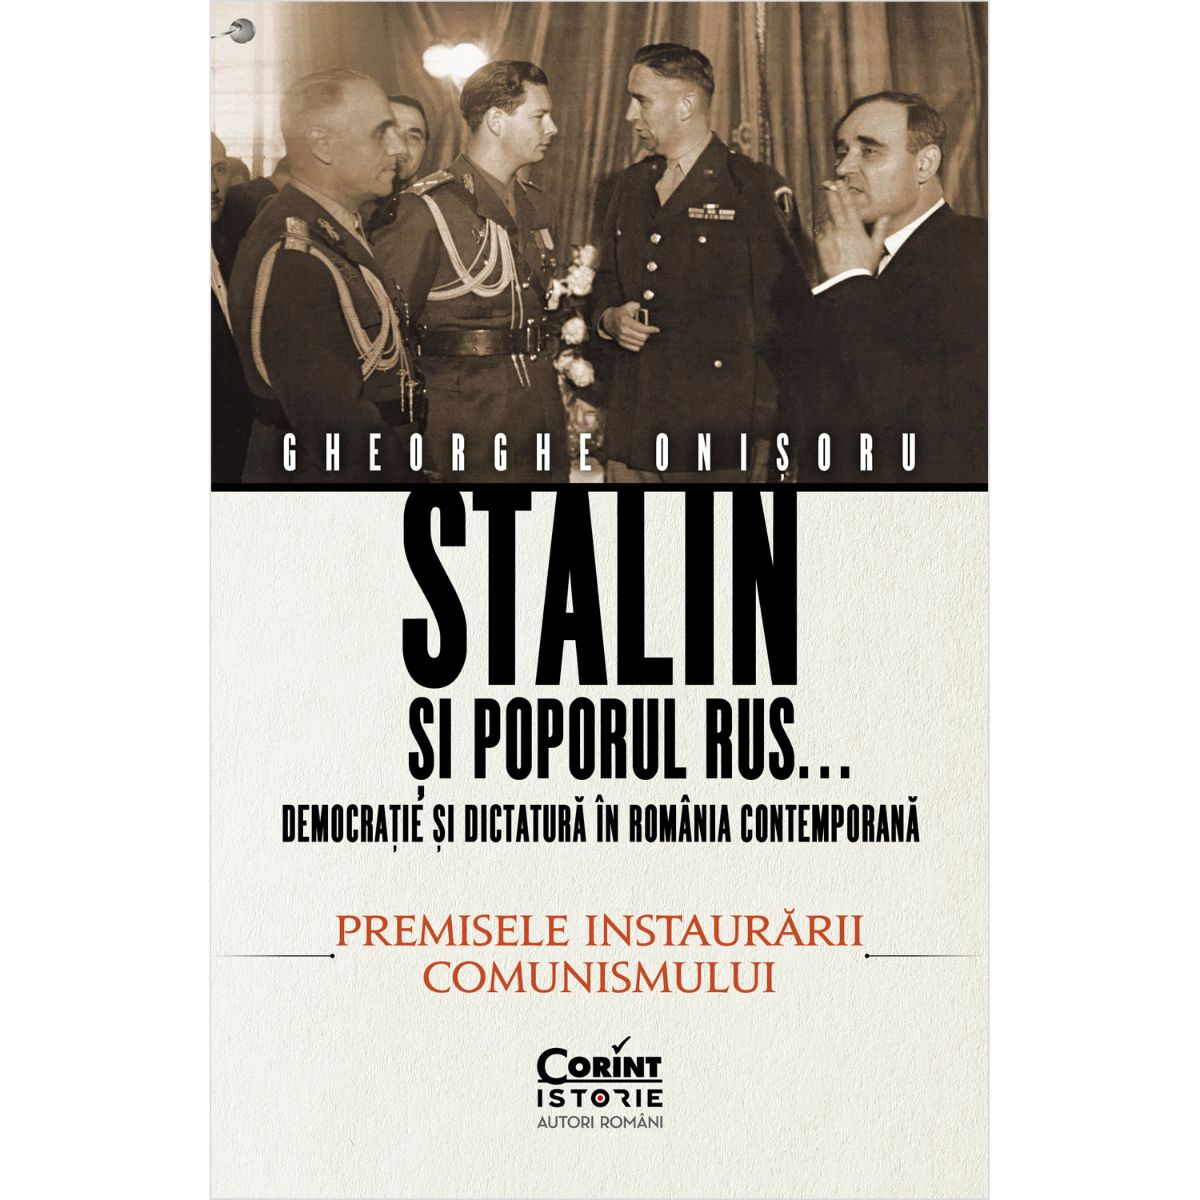 Stalin si poporul rus, Gheorghe Onisoru, Vol. 1